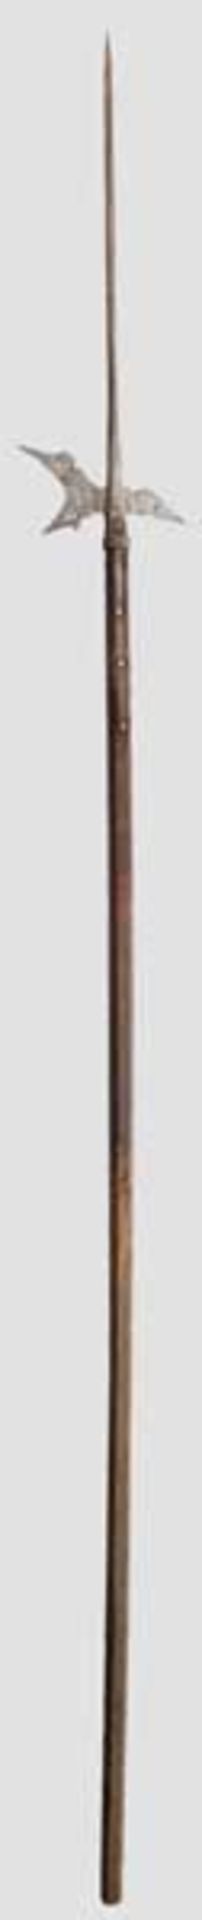 Helmbarte, deutsch um 1600   Schlanke Vierkant-Stoßspitze, Blatt mit Kerbdekor und punktförmigen